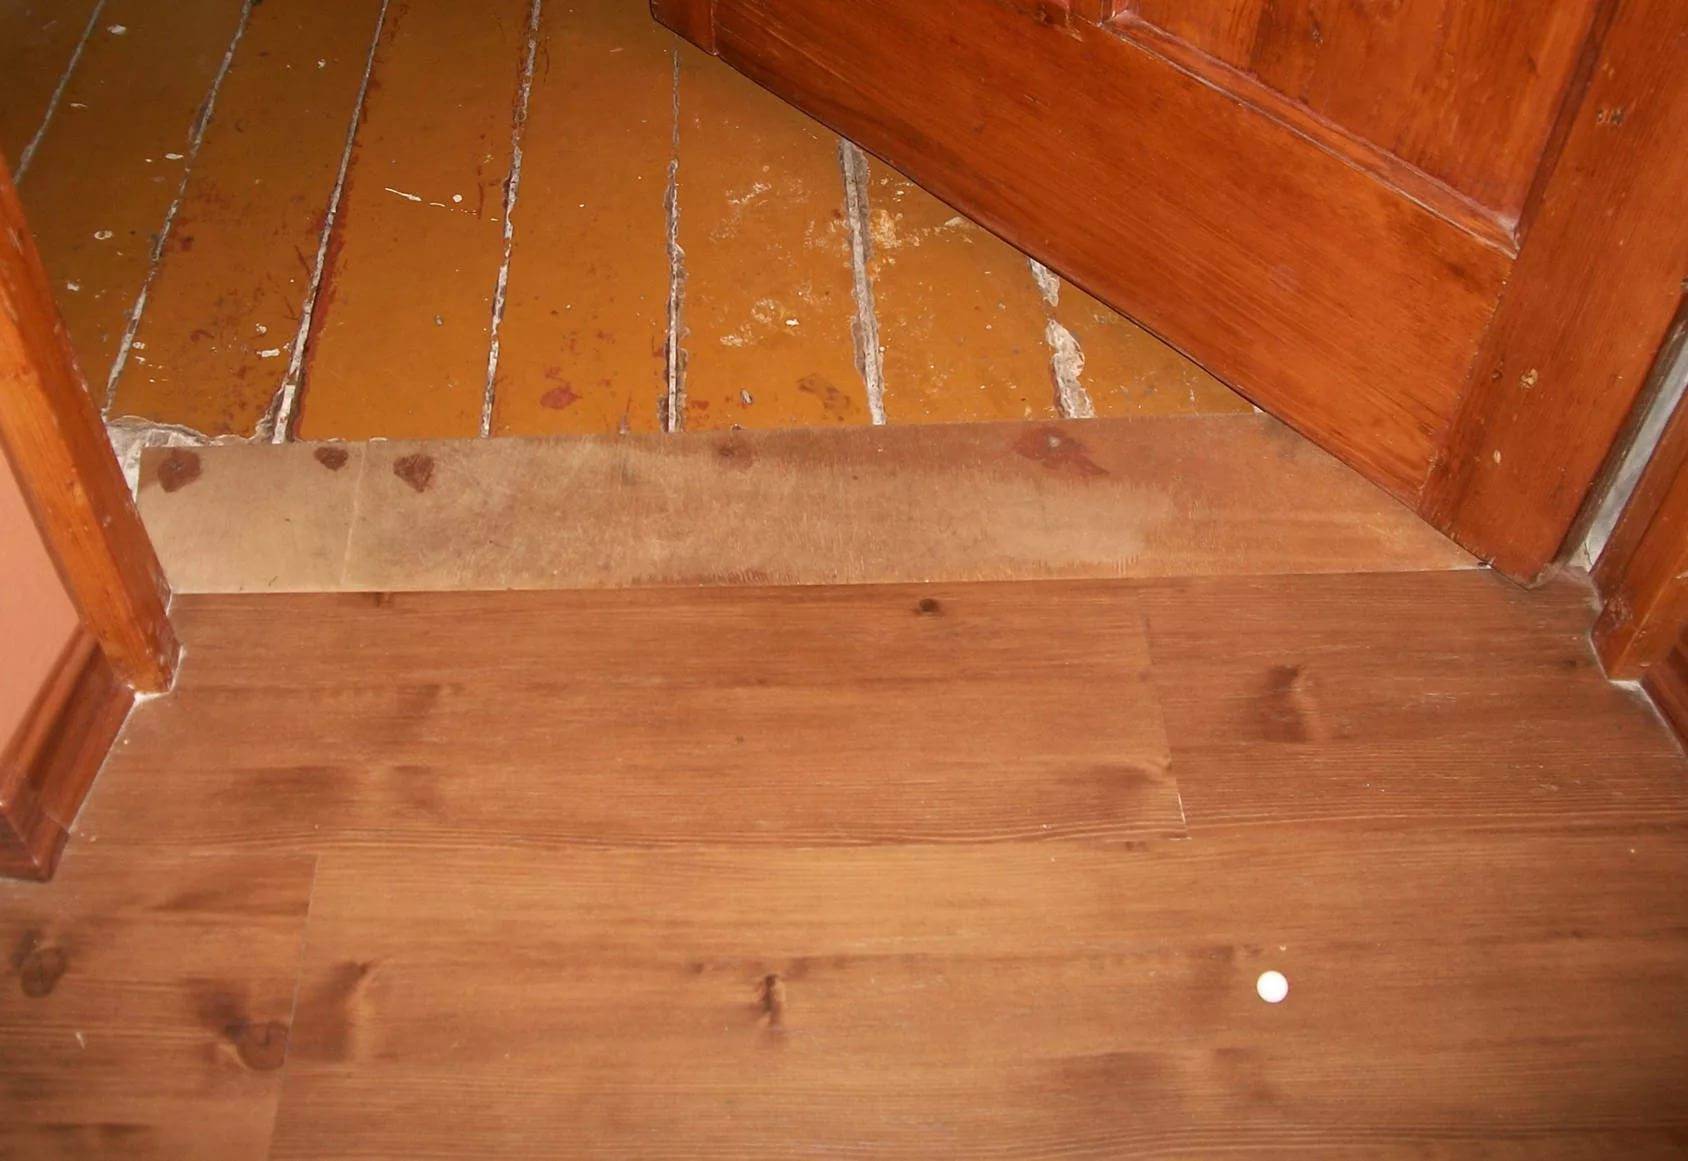 Как уложить линолеум на деревянный пол в доме своими руками на фанеру и клей- обзор +видео